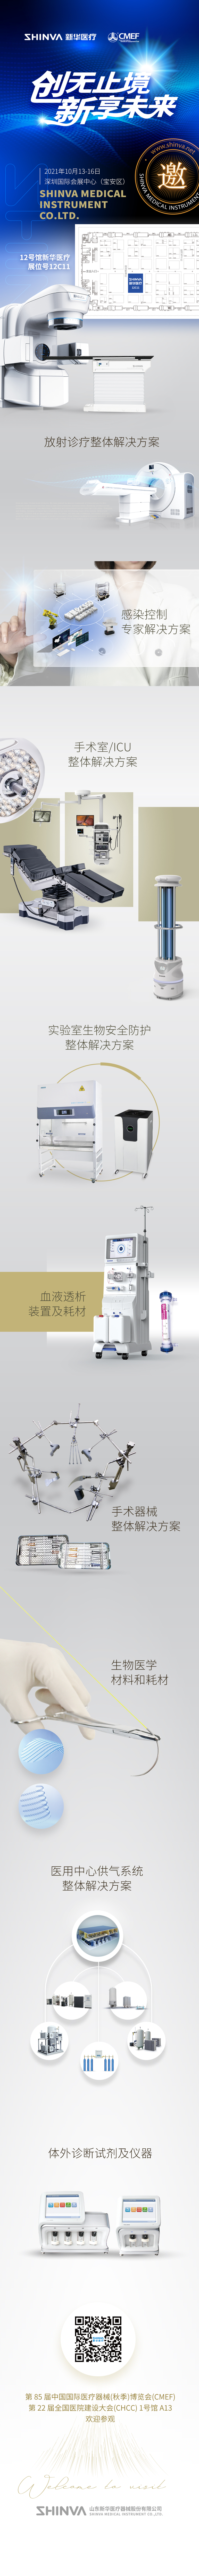 第85届中国国际医疗器械博览会，新华医疗邀您相约！